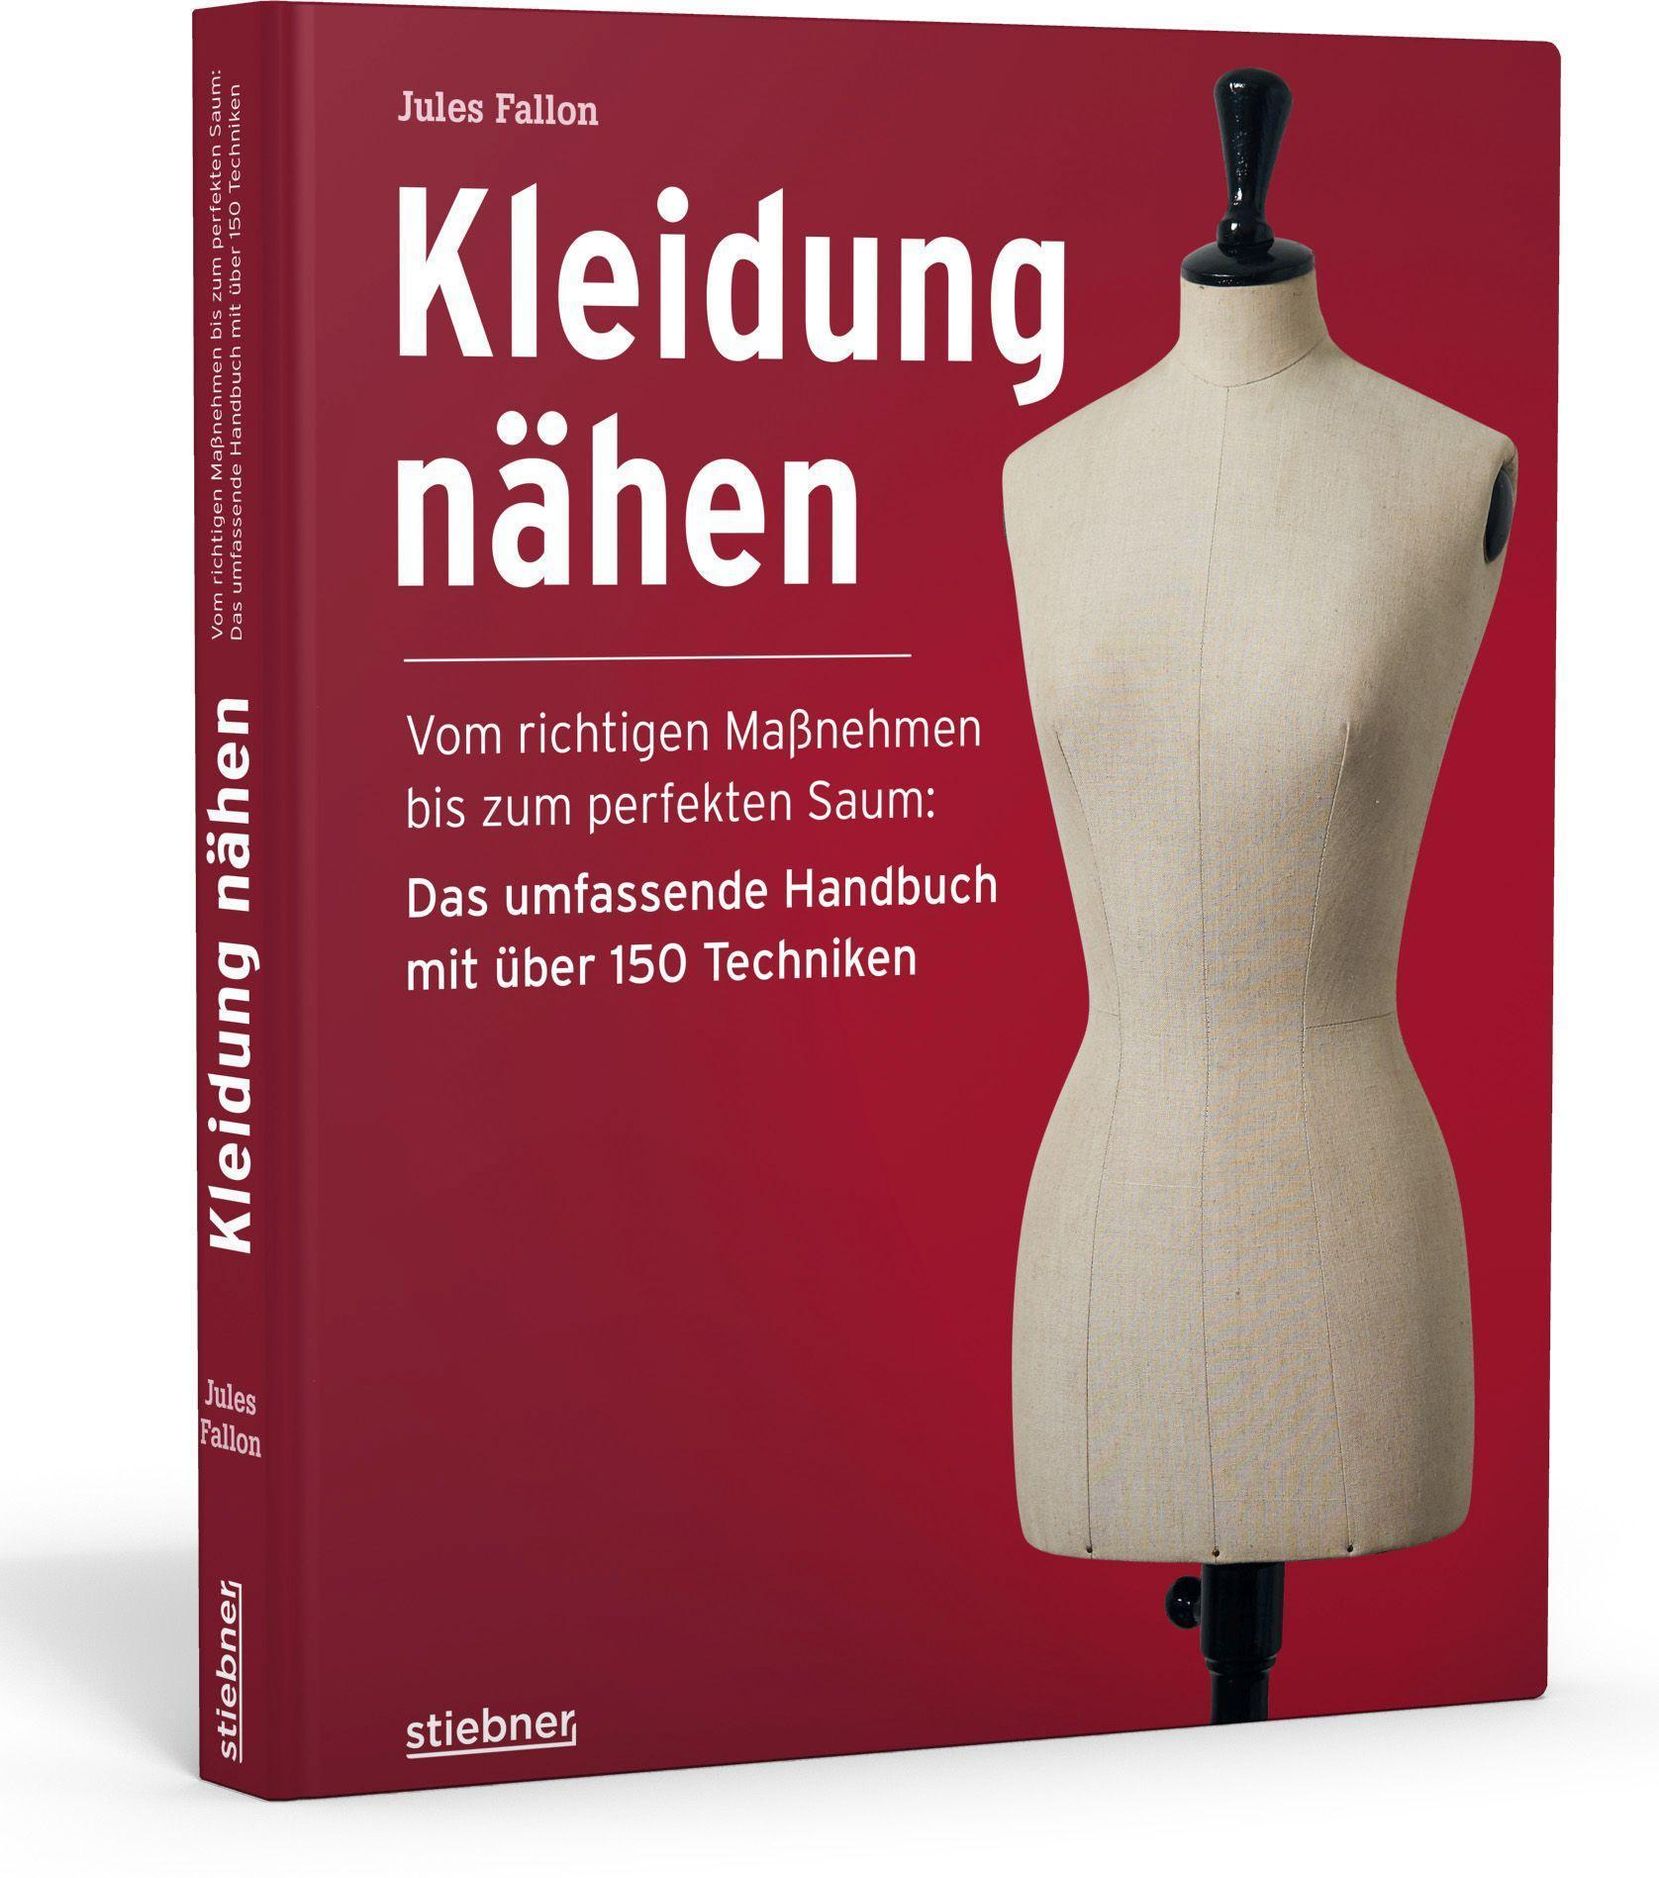 Kleidung Nähen. Vom richtigen Maßnehmen bis zum perfekten Saum: Das  umfassende Handbuch mit über 150 Techniken.